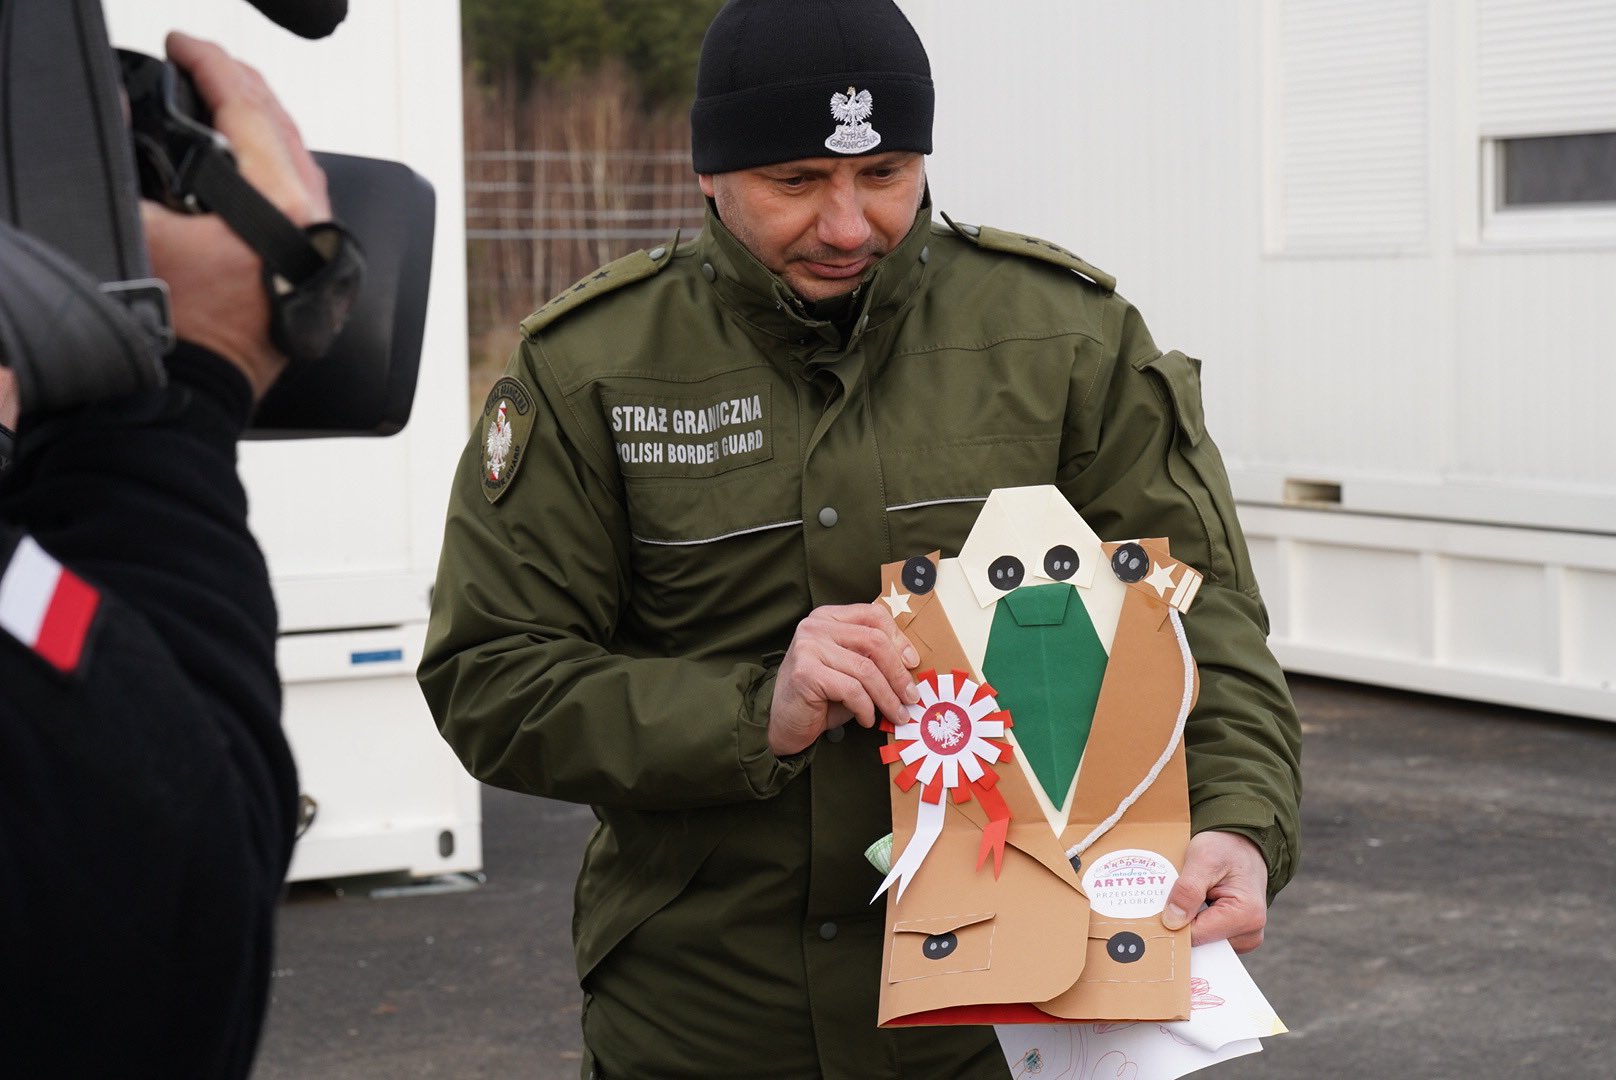 Żołnierze i funkcjonariusze służący na granicy dostali z całego kraju tysiące kartek z życzeniami (zdjęcia)